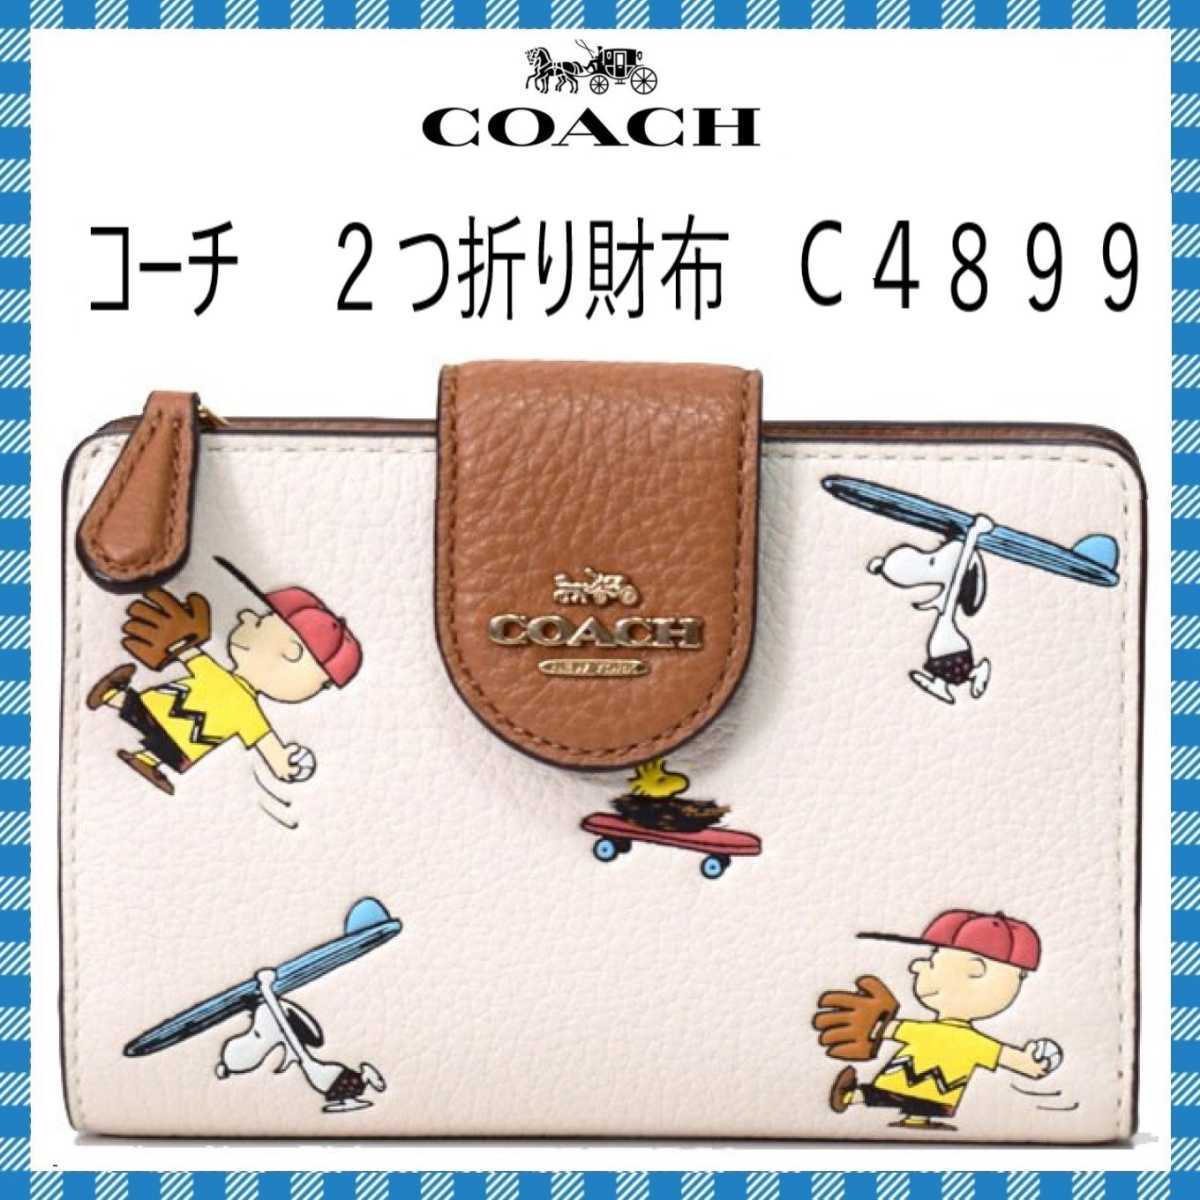 がある COACH スヌーピー 二つ折り財布の通販 by 北斗七星's shop 